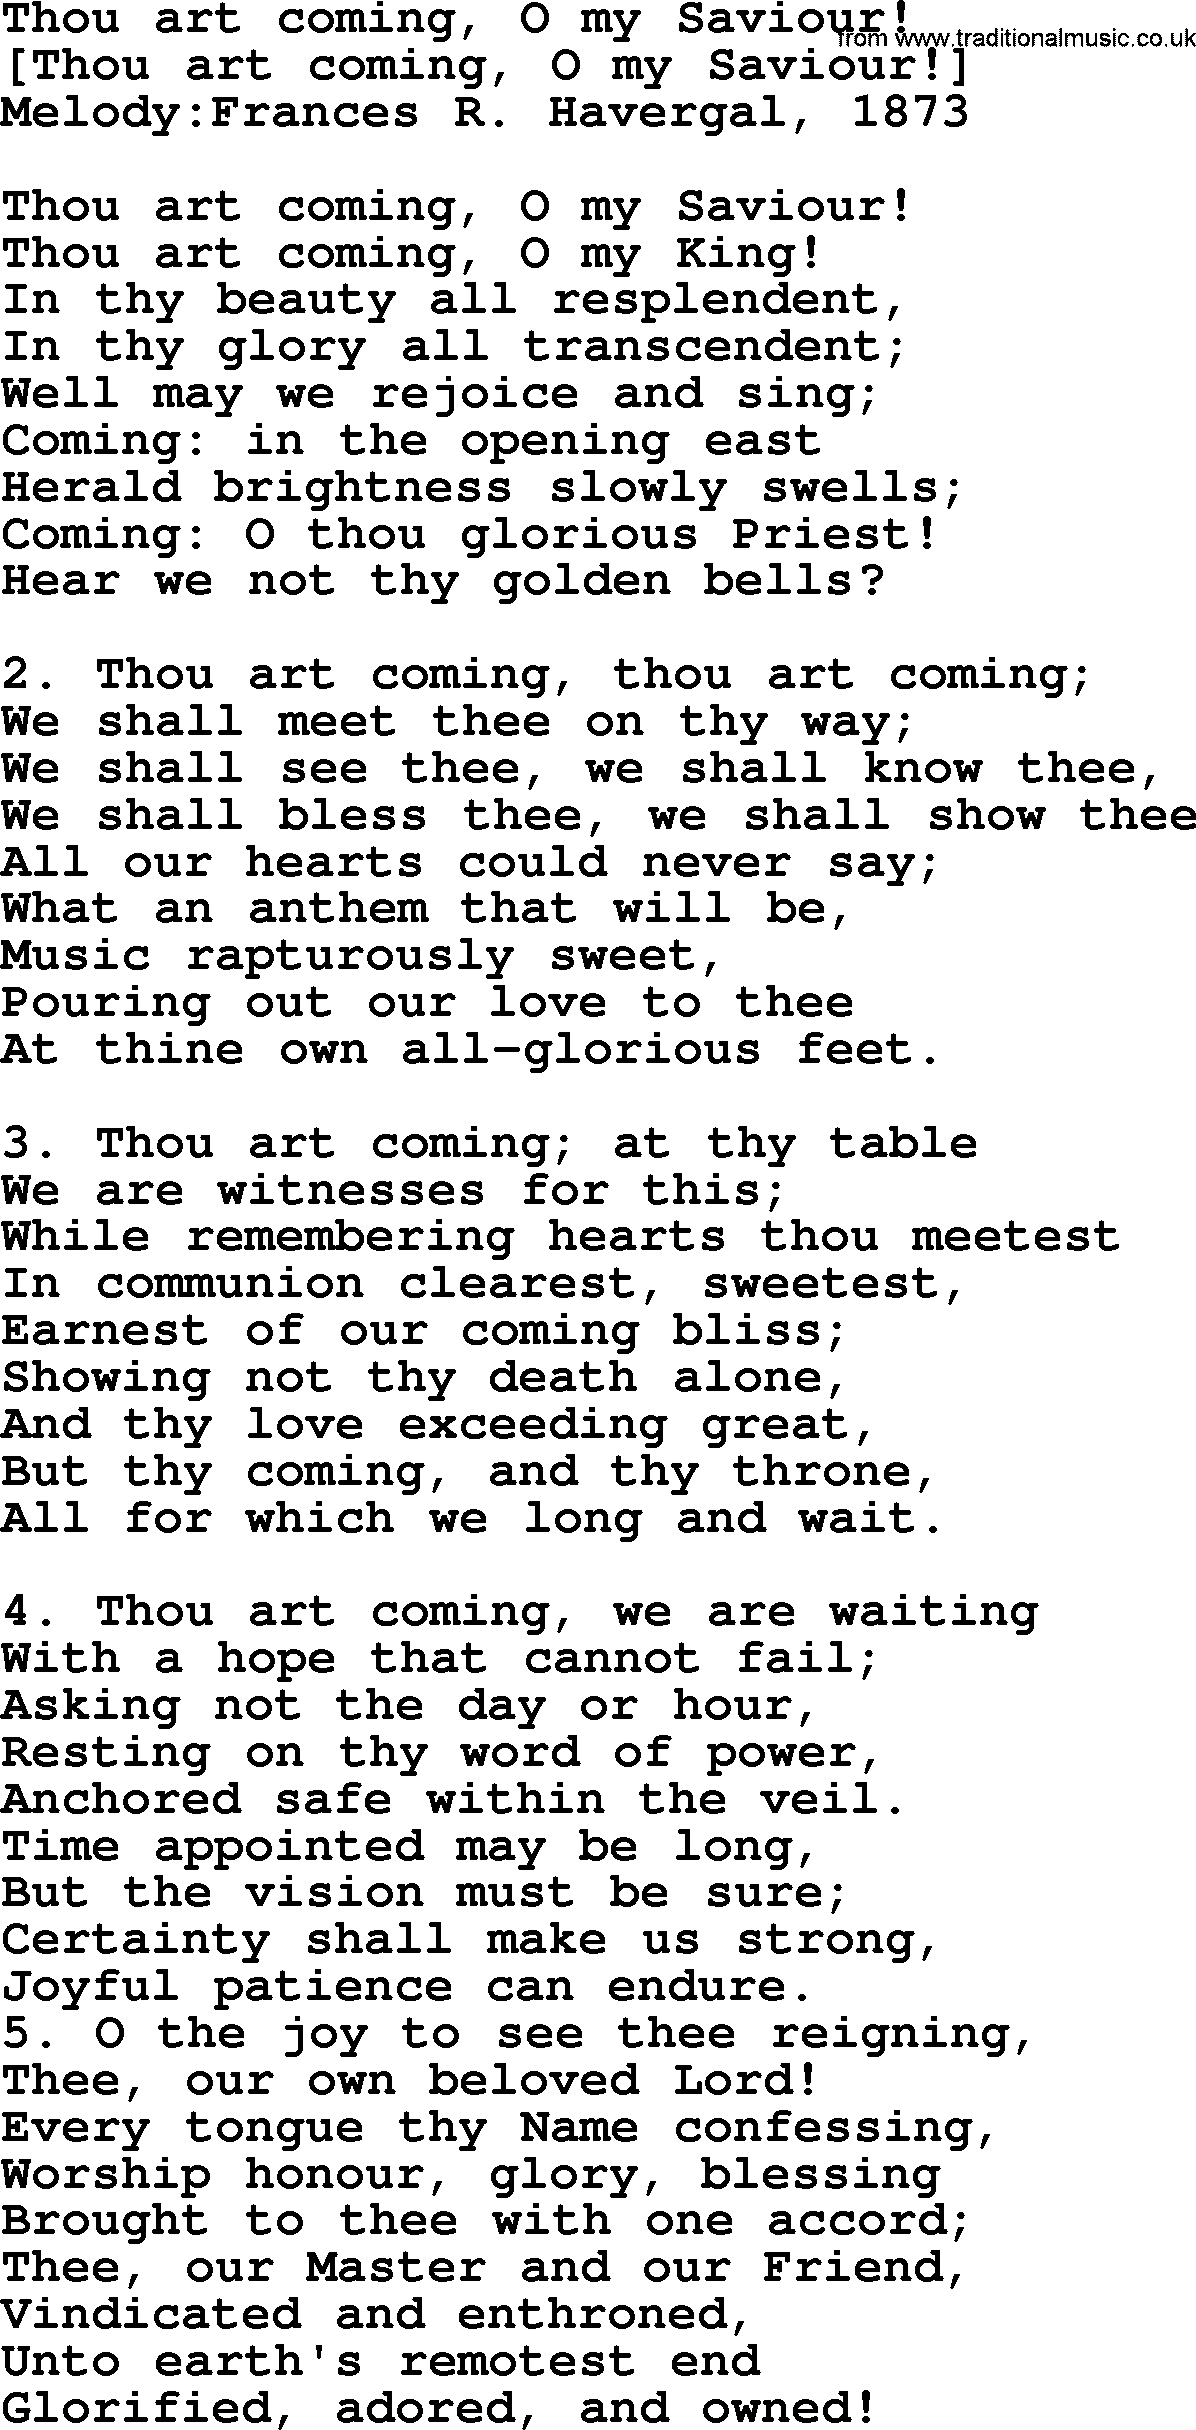 Old English Song: Thou Art Coming, O My Saviour! lyrics